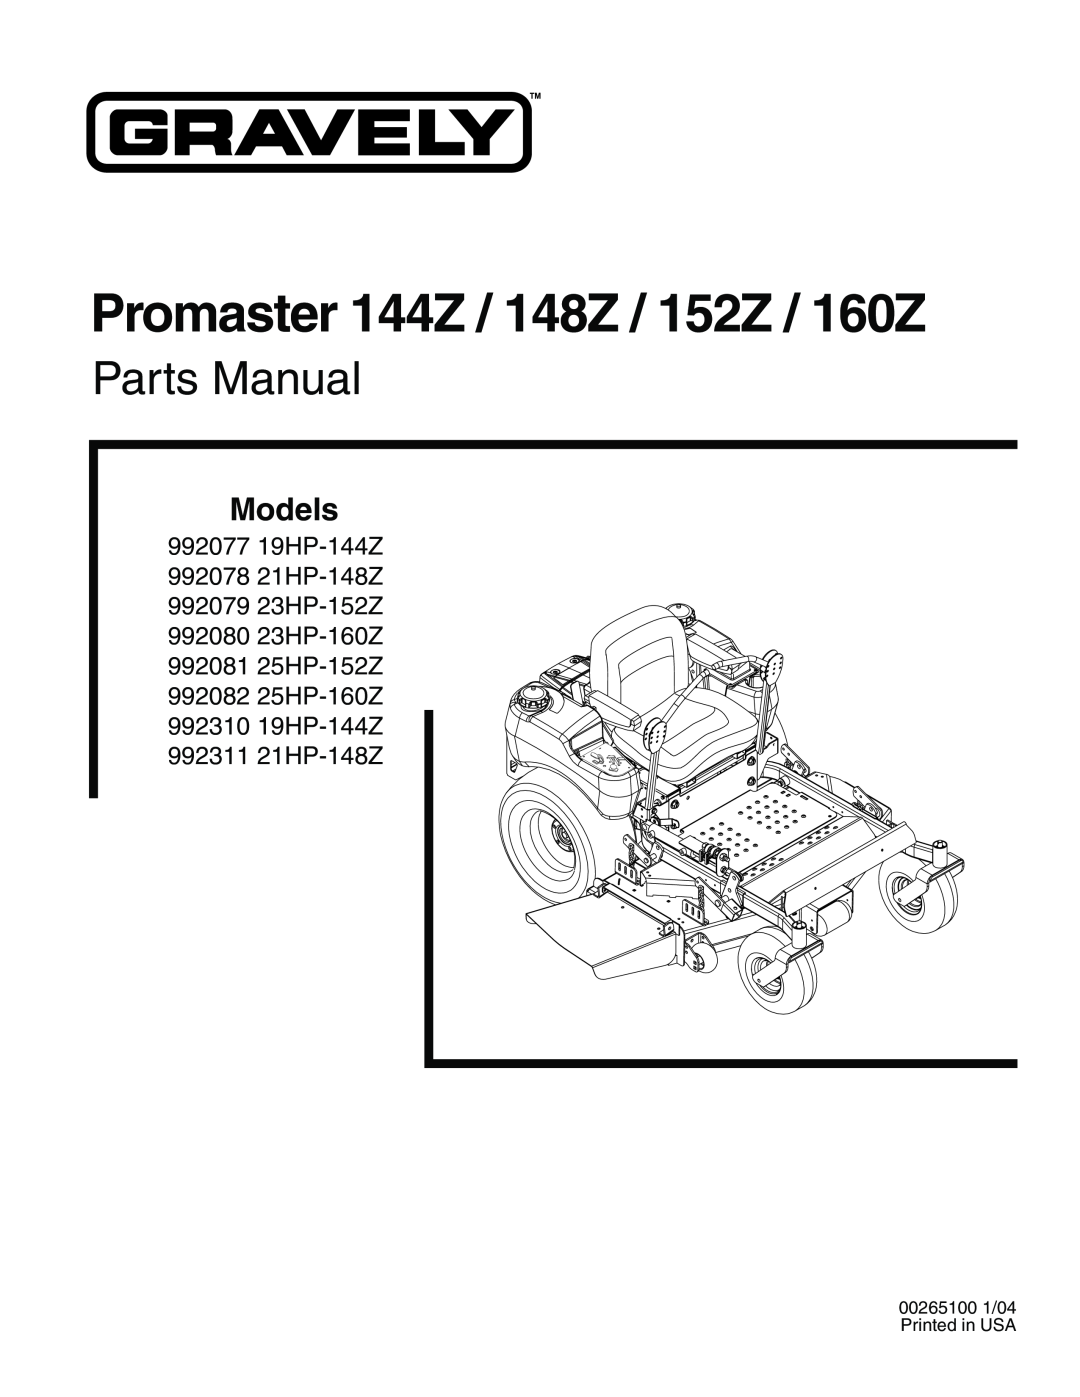 Gravely 992311 21HP-148Z manual Promaster 144Z / 148Z / 152Z / 160Z, Parts Manual, Models, 992077 19HP-144Z 